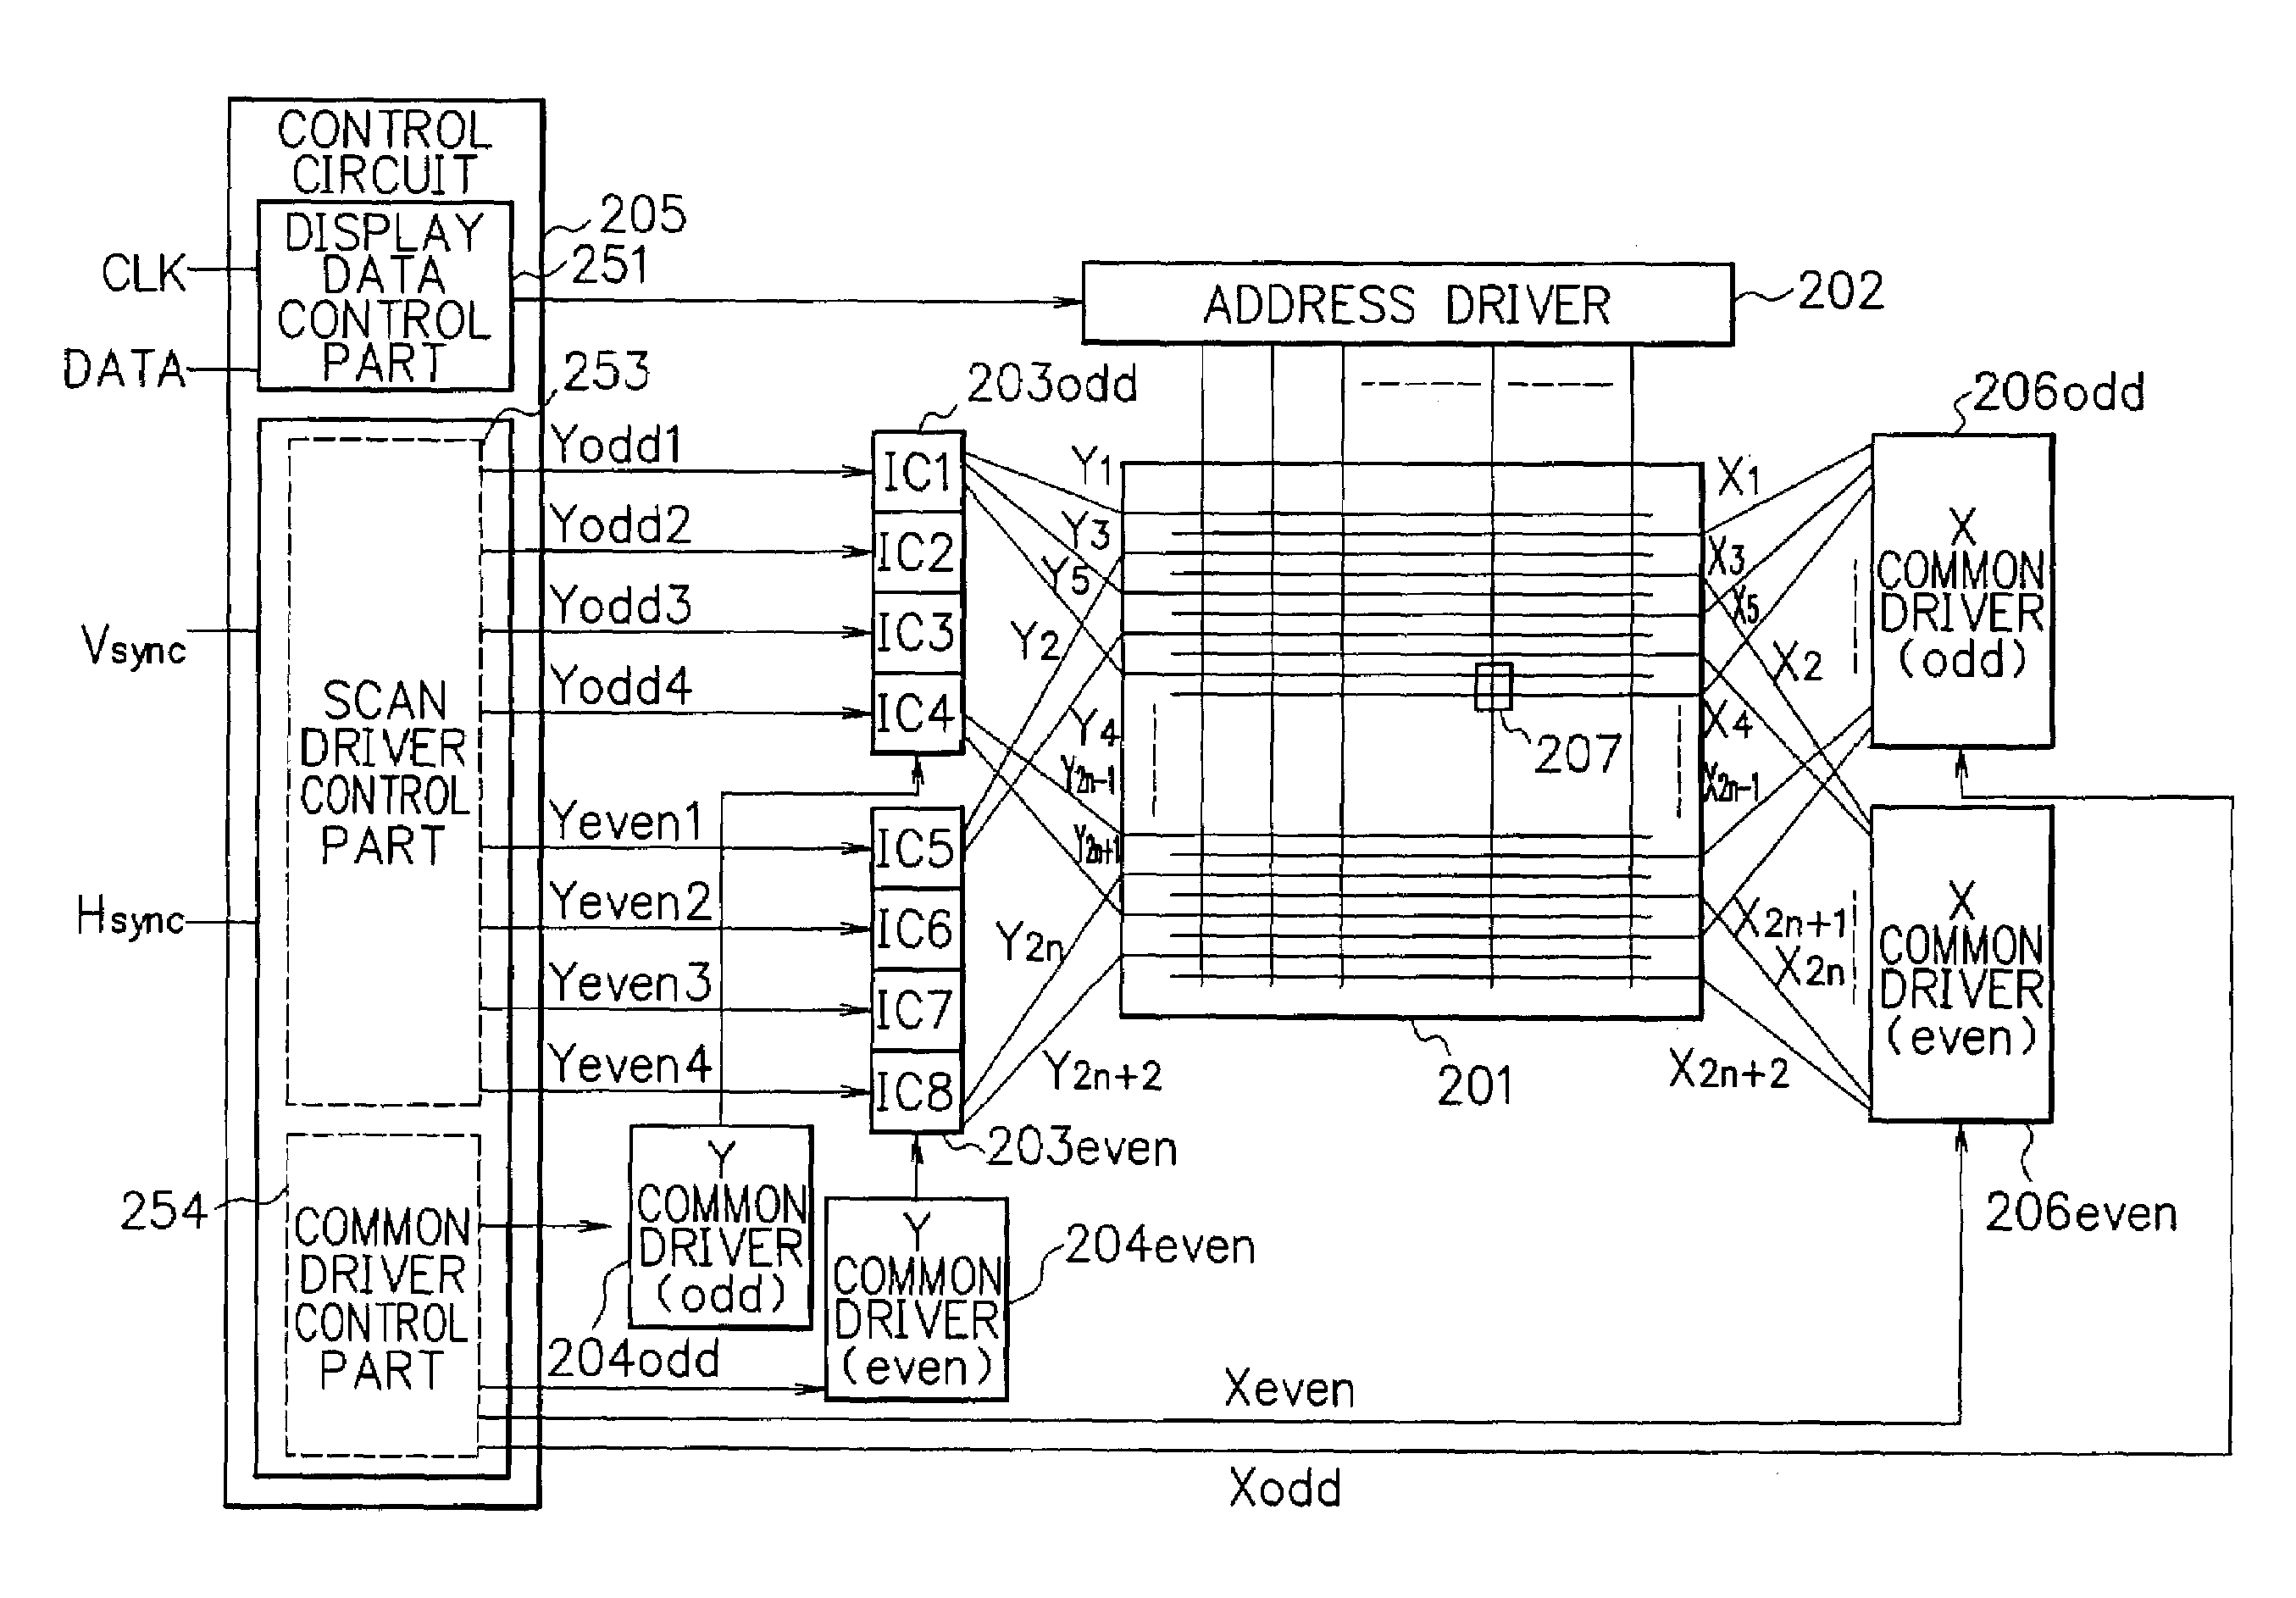 Display panel drive circuit and plasma display